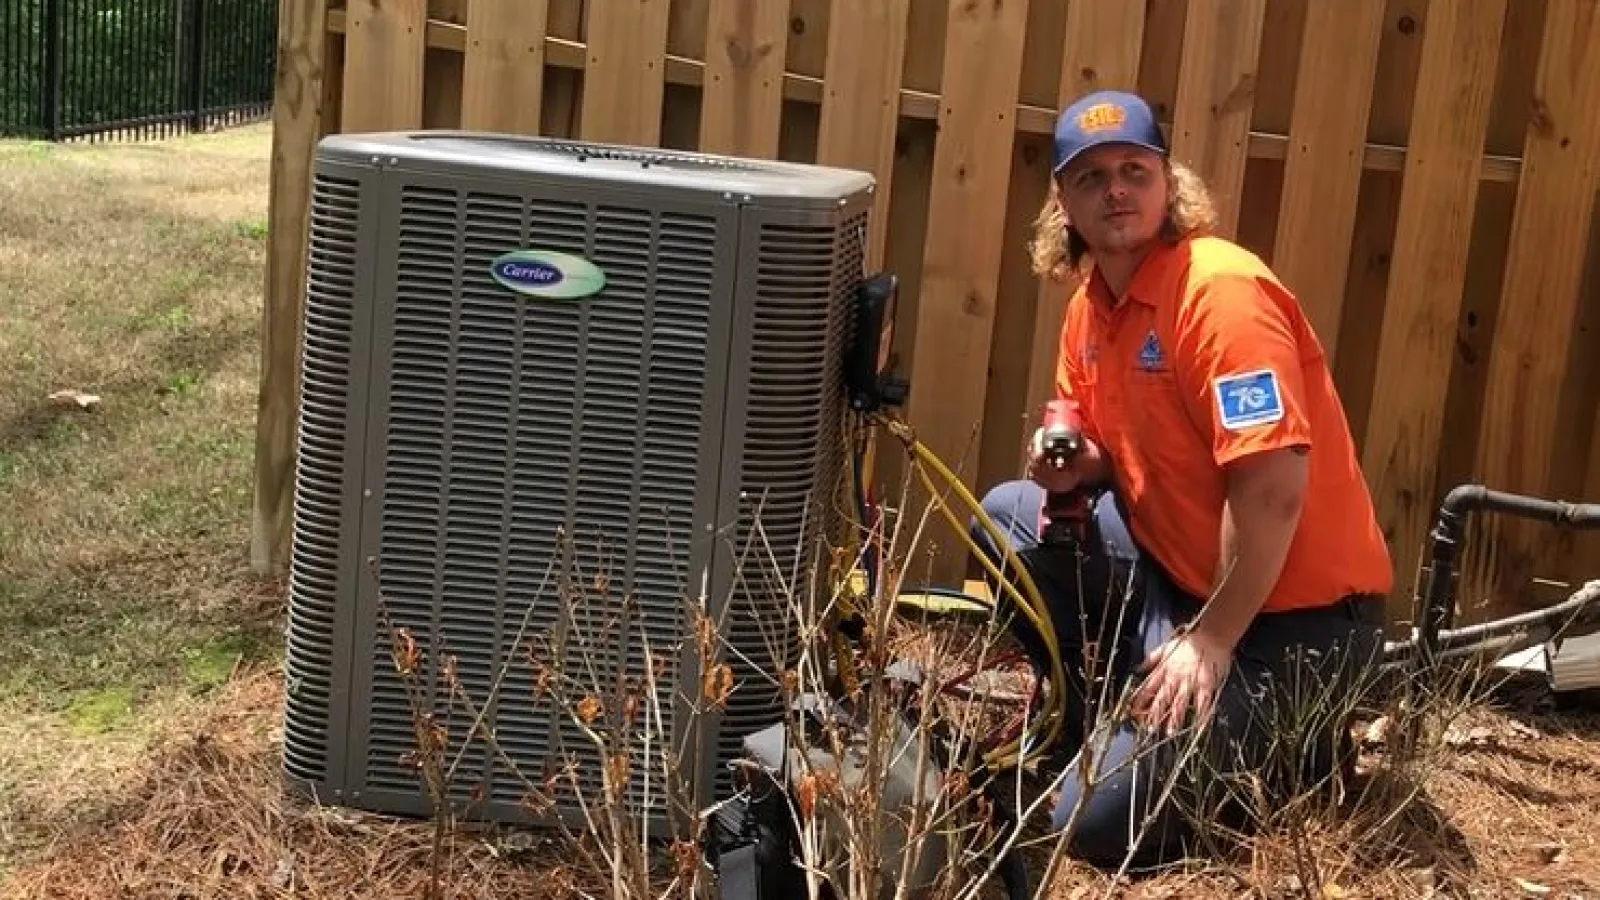 Estes Services Technician fixing an Air Conditioner in Atlanta